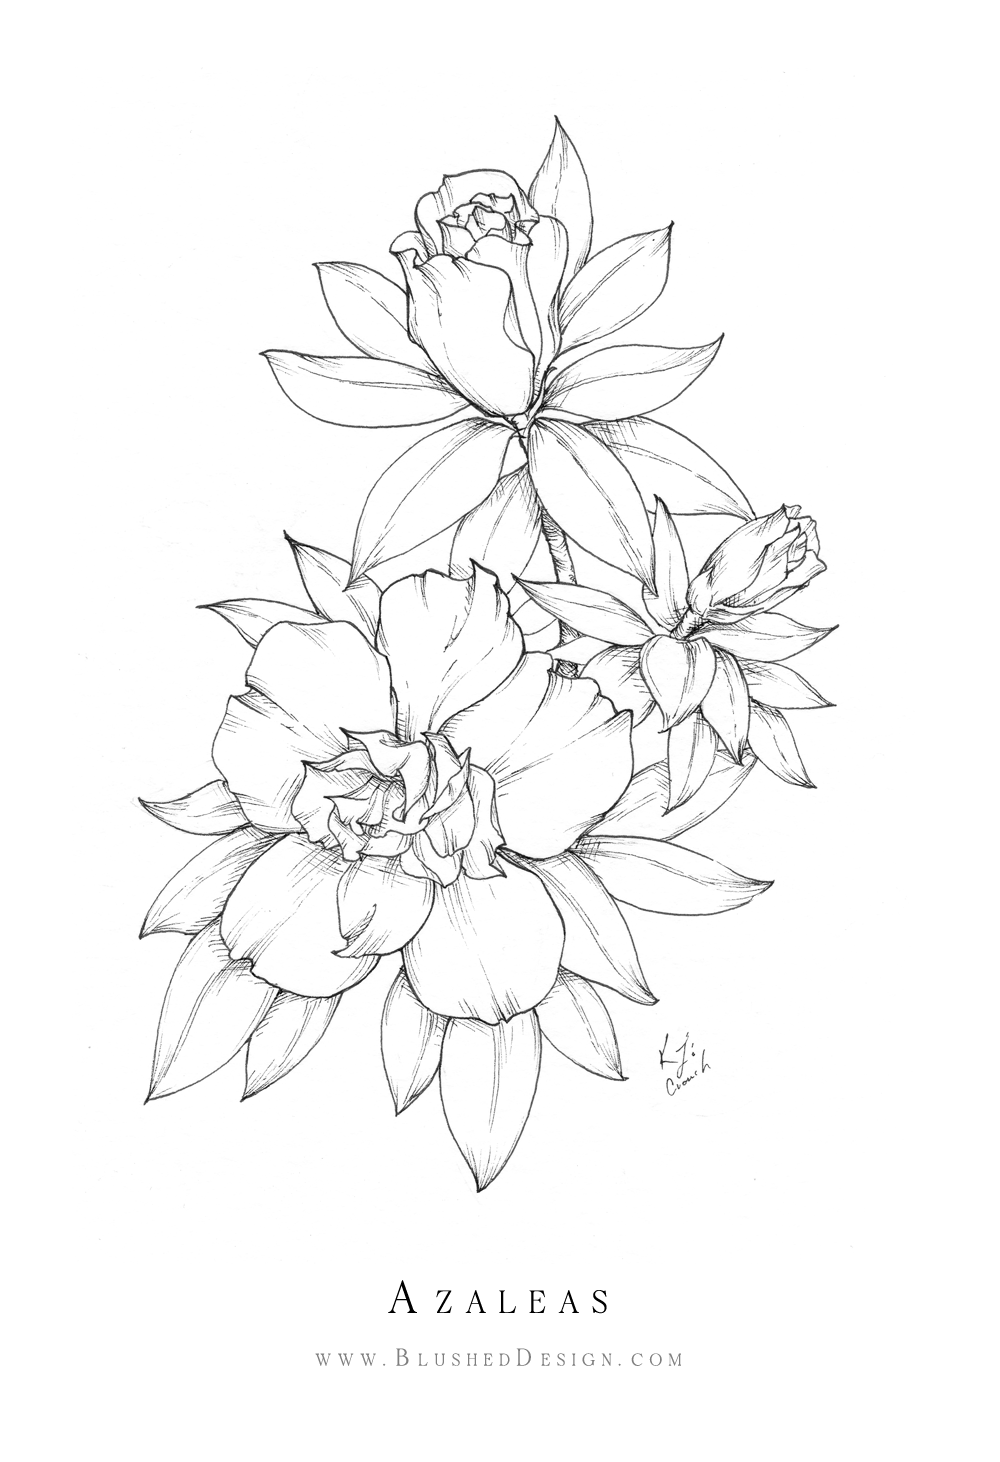 Delicate flower drawings